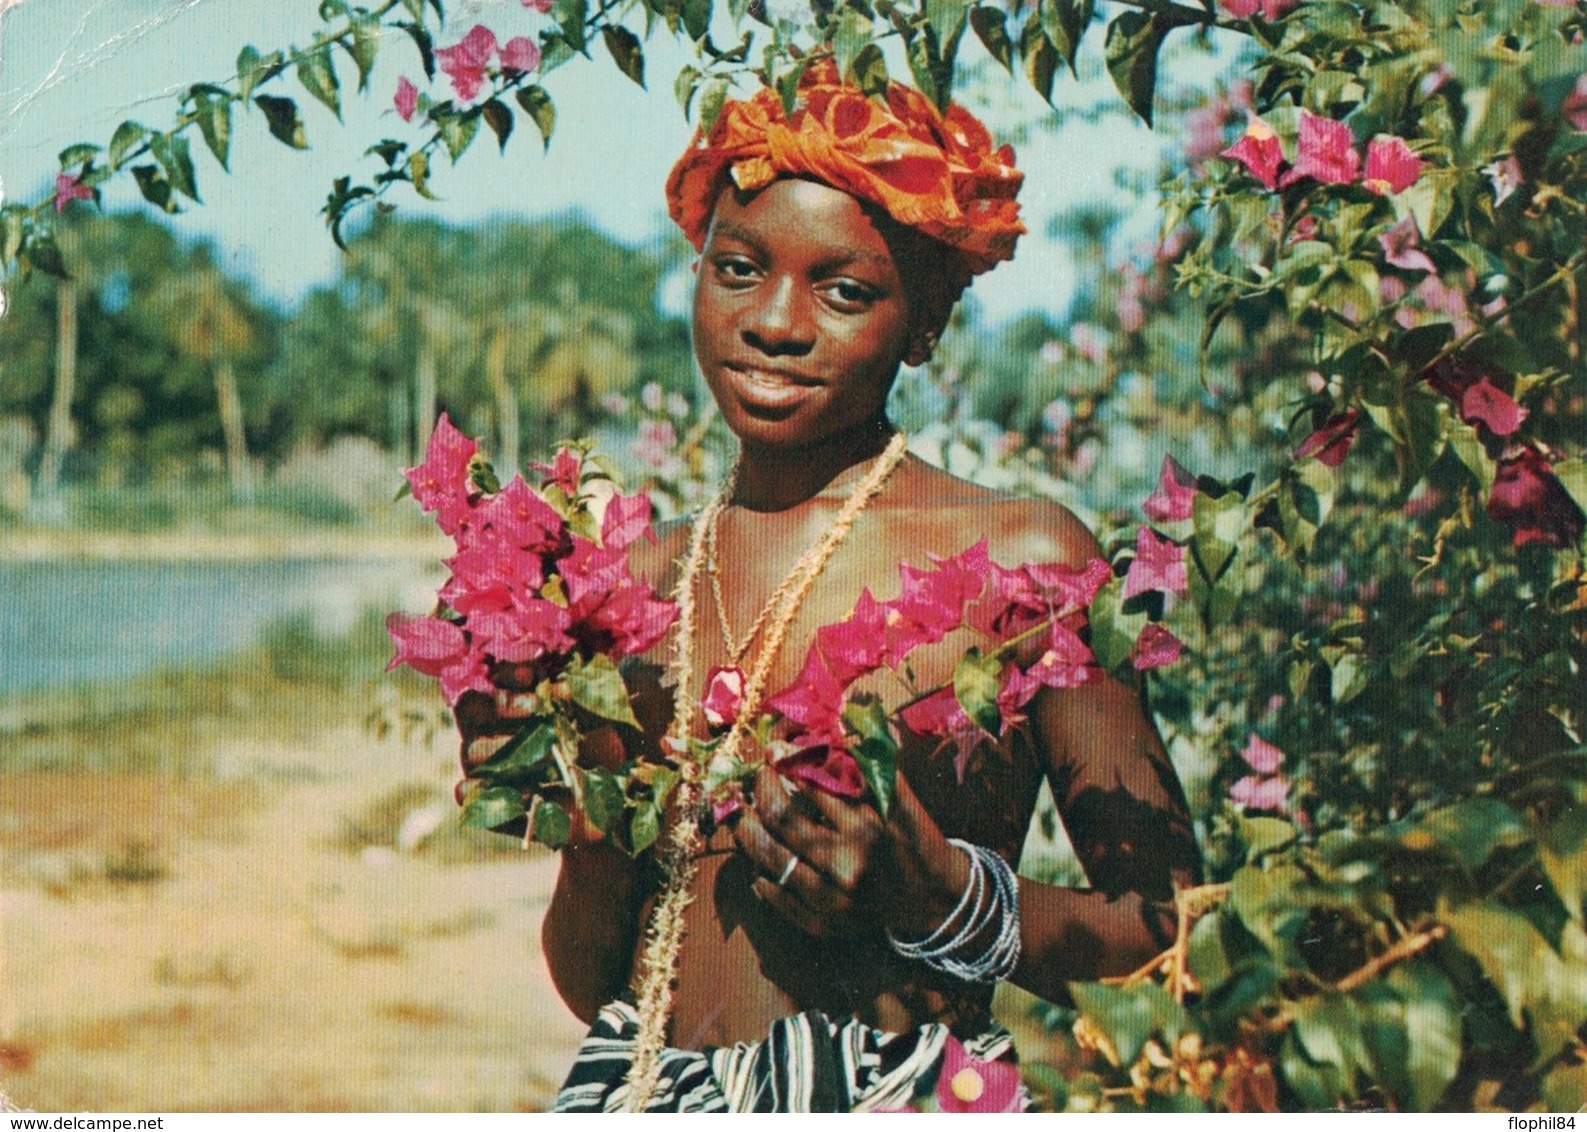 SIERRE LEONE - CROISIERE 1959 -  DU POLE NORD AU POLE SUD - IONYL - PLASMARINE - SIERRA LEONE. - Sierra Leona (...-1960)